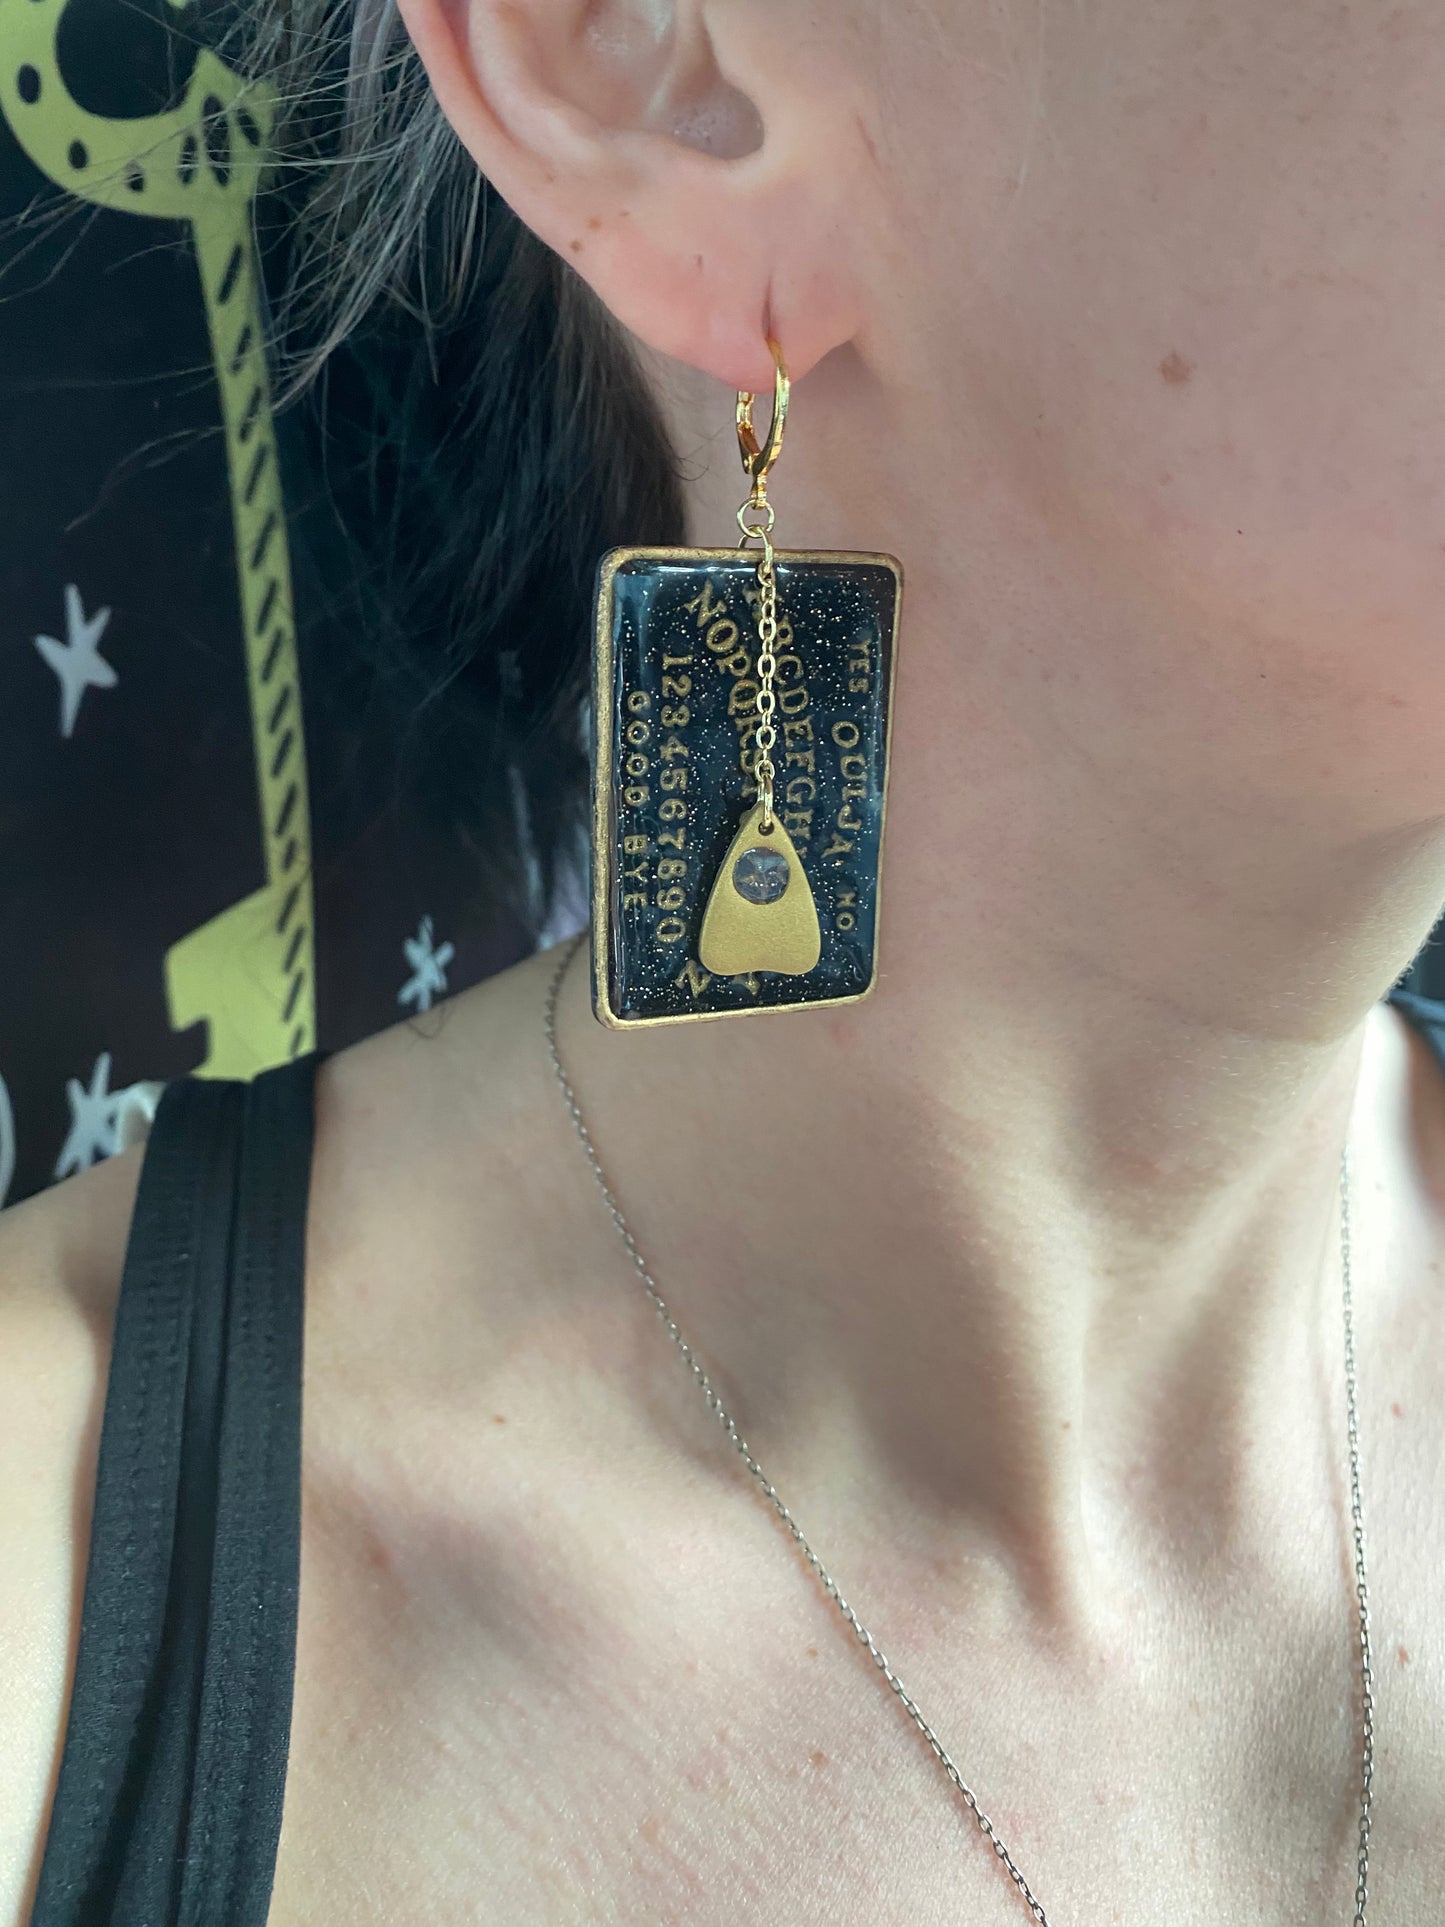 Spirit Board with planchette earrings